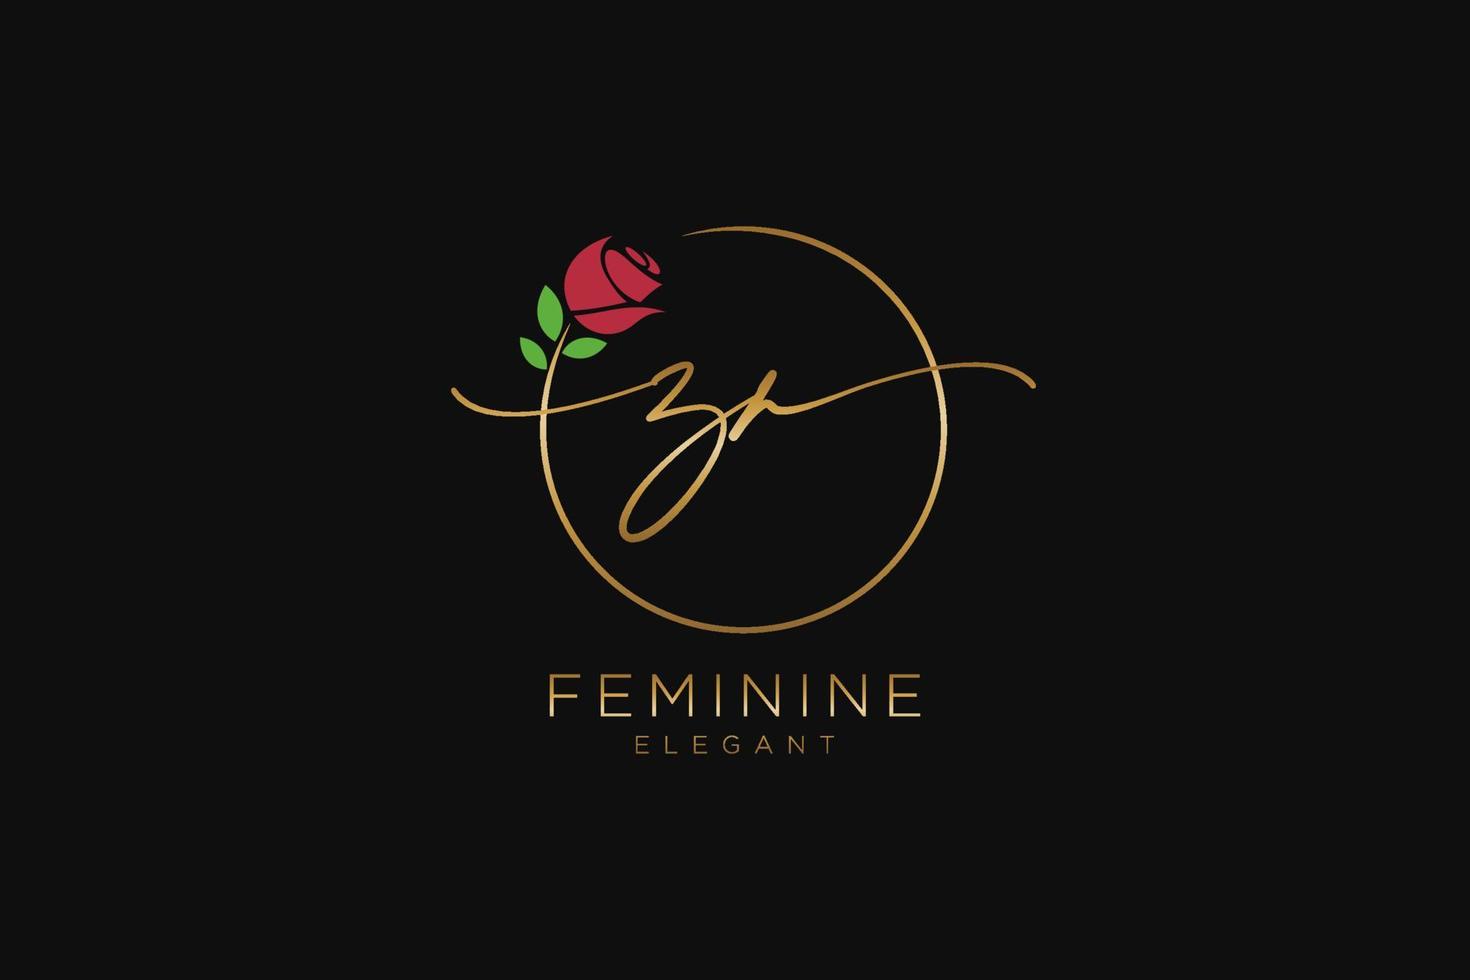 monogramme de beauté du logo féminin initial zr et création de logo élégante, logo manuscrit de la signature initiale, mariage, mode, floral et botanique avec modèle créatif. vecteur